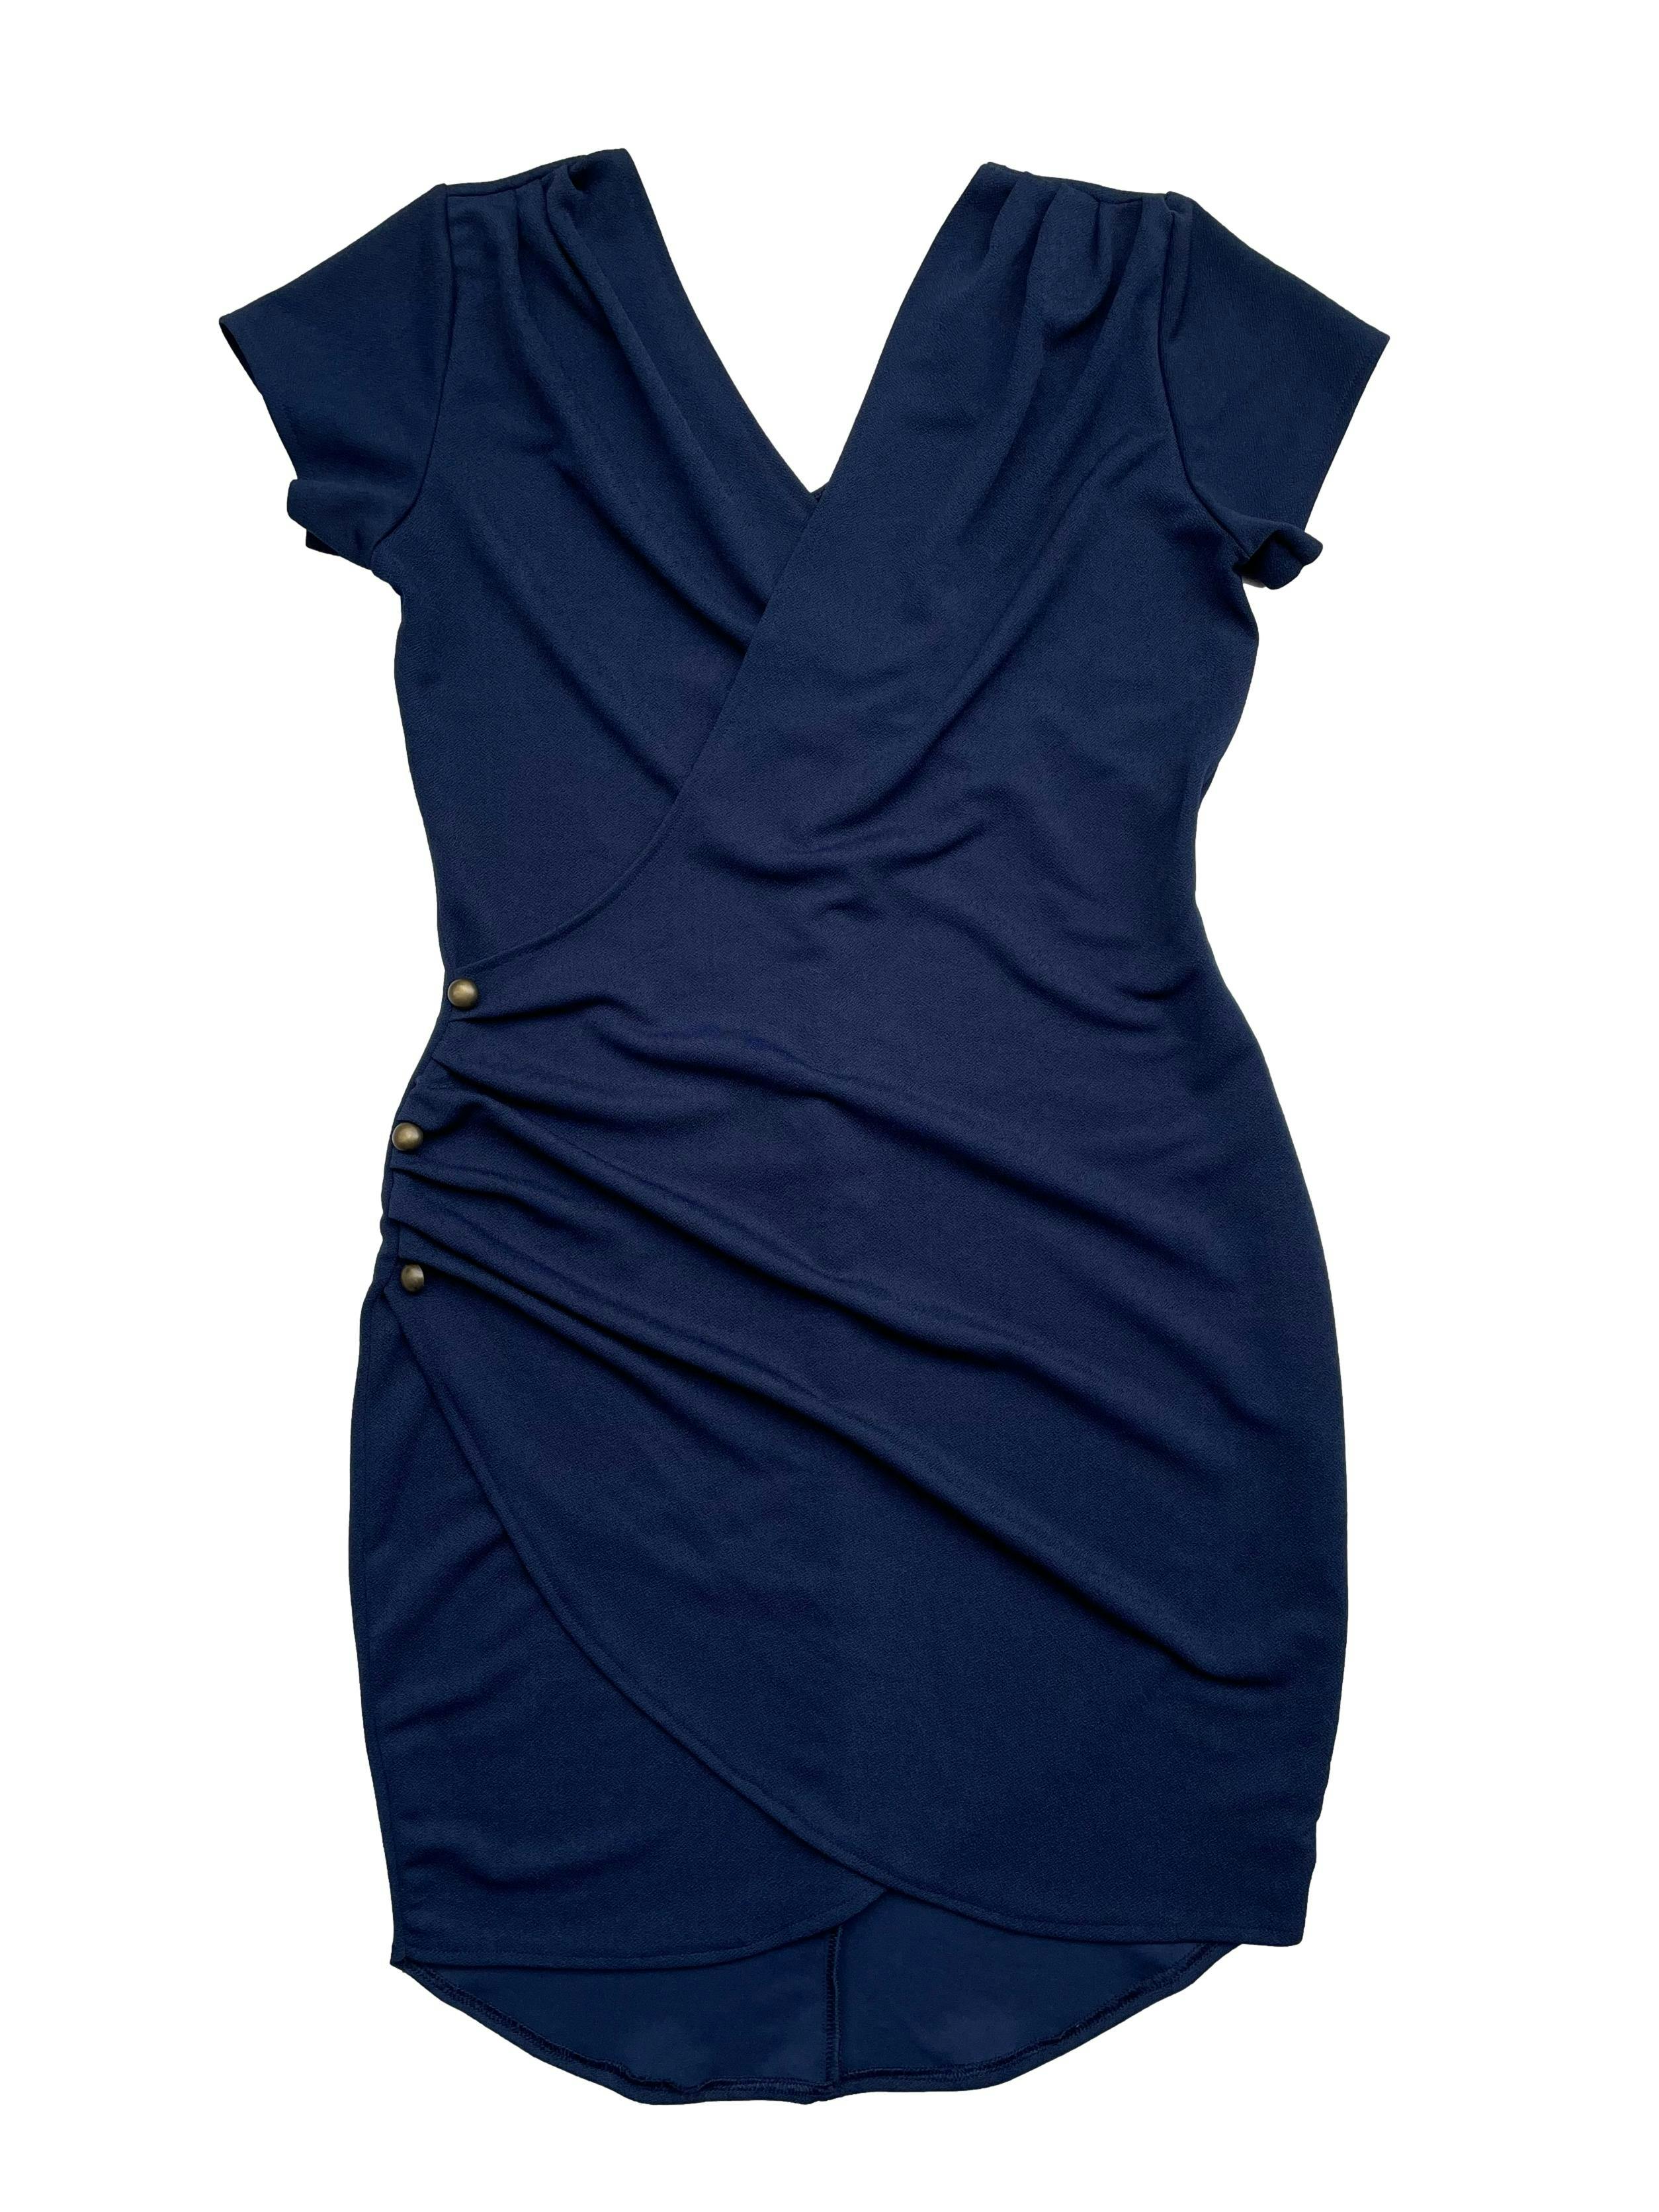 Vestido azulino escote cruzado, drapeado lateral, pliegues en los hombros, tela gruesa stretch. Busto: 90cm. Largo: 90cm